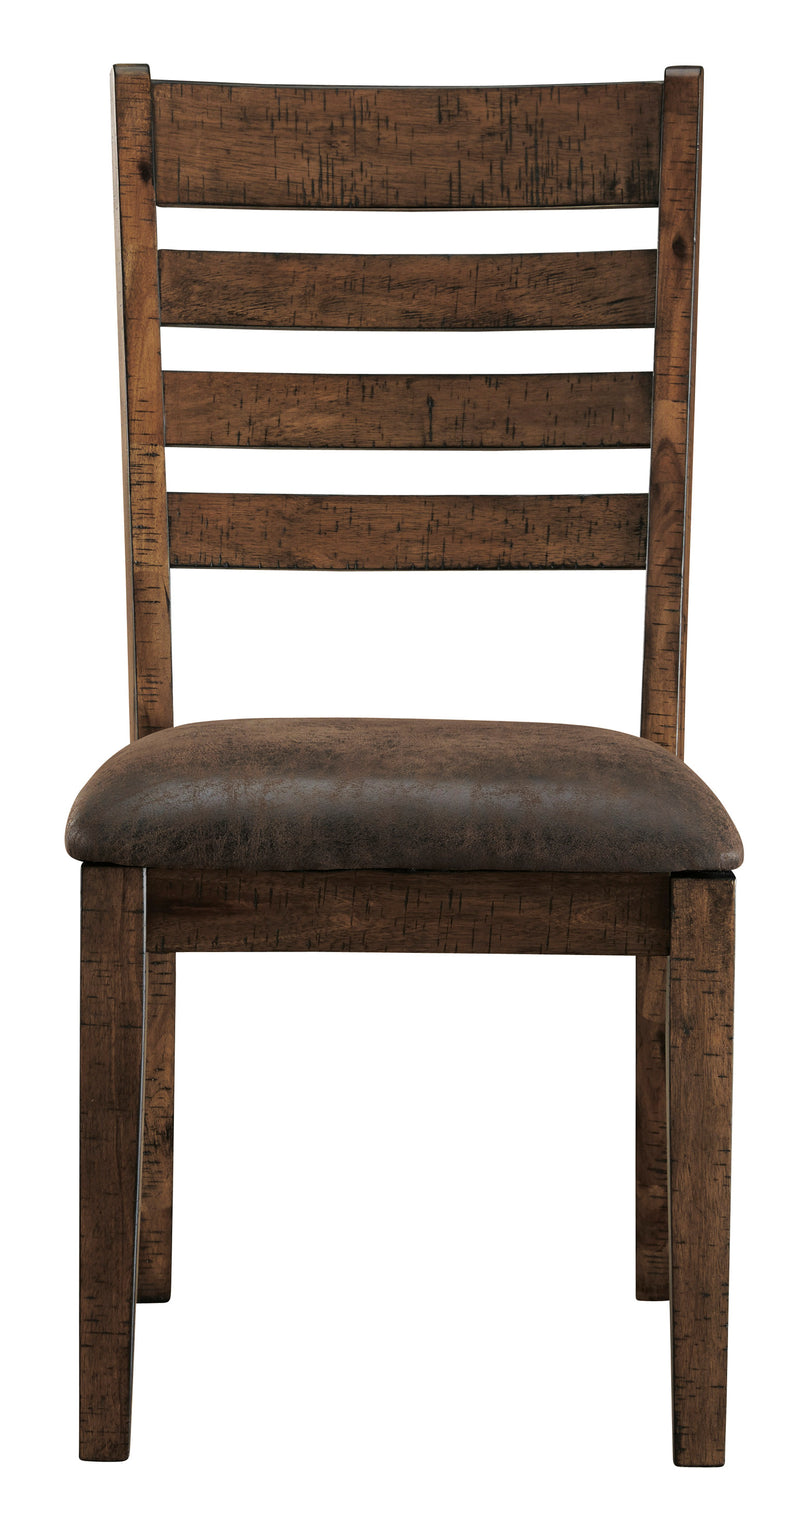 Royard Dining Chair (4634836926560)